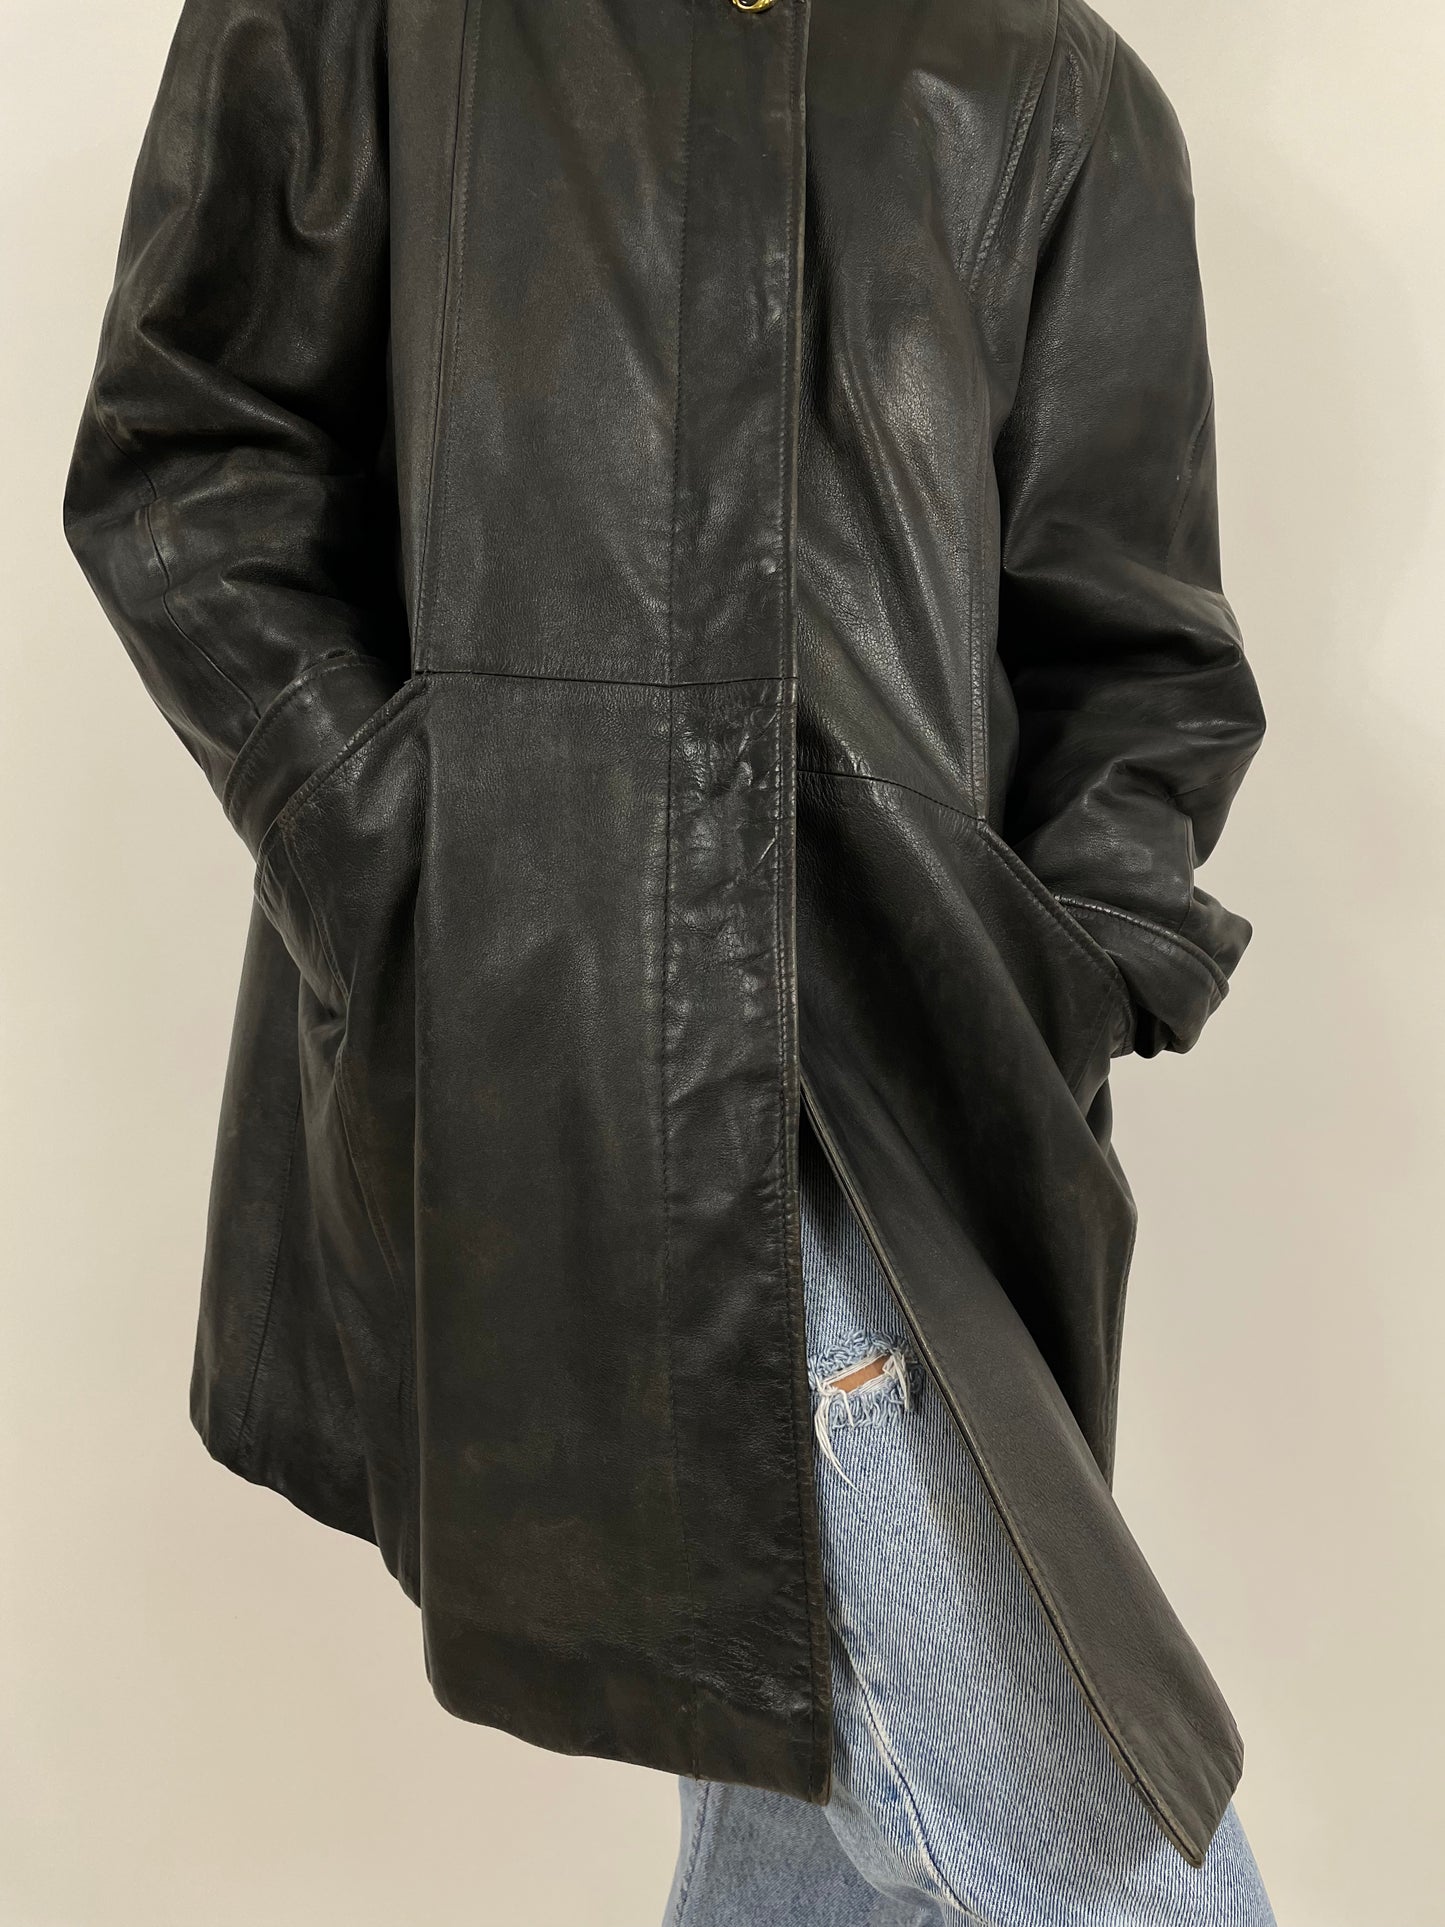 Peter 1990s jacket